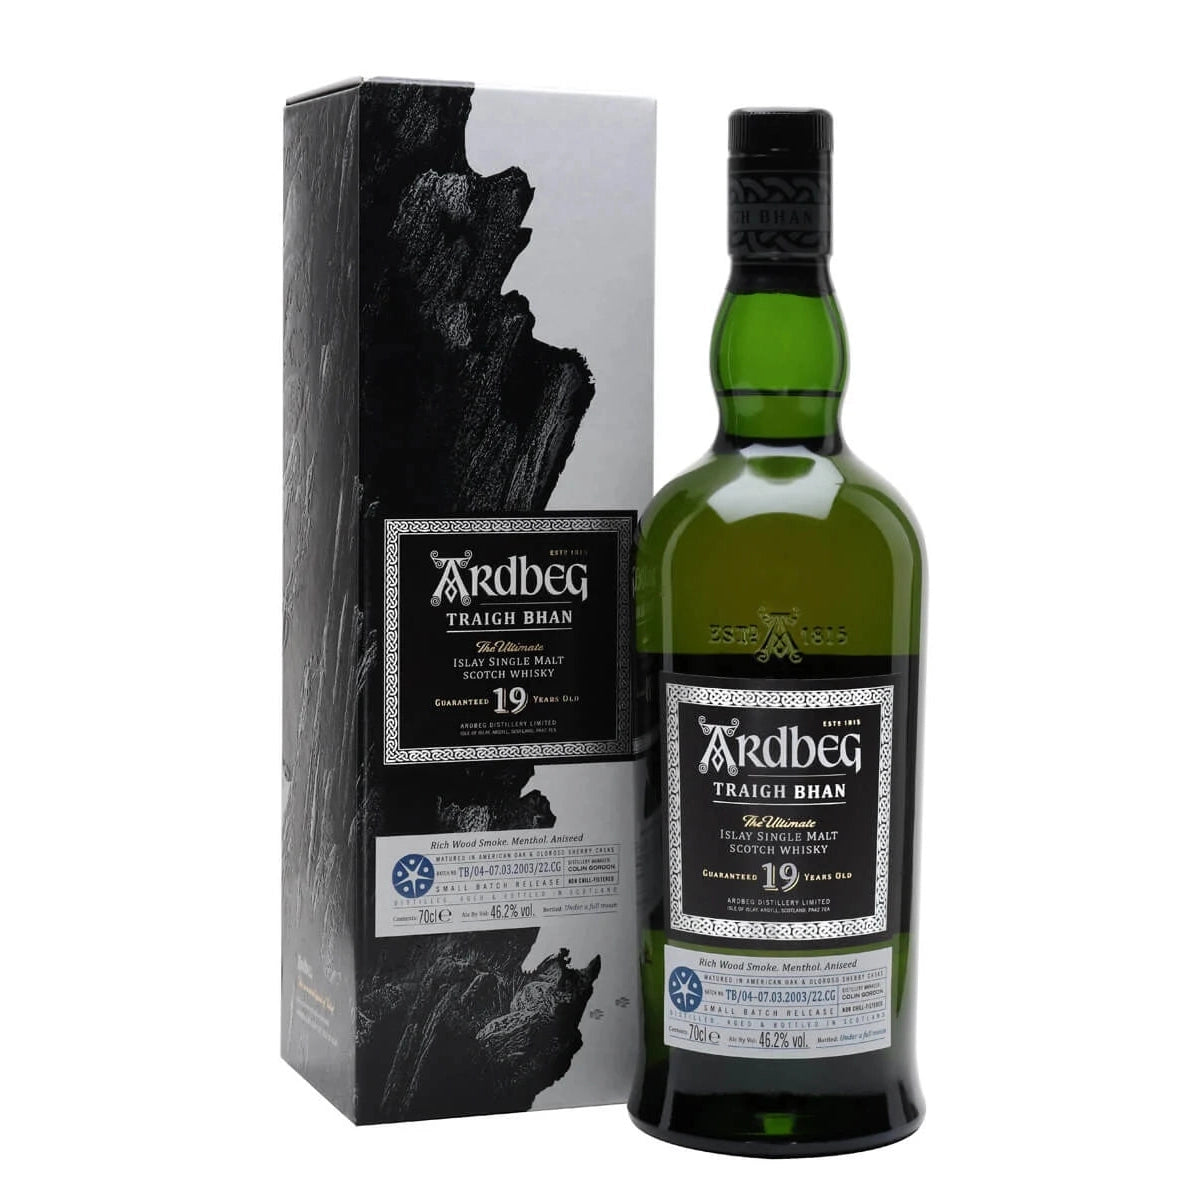 Ardbeg Traigh Bhan 19 Year Old - Batch 4 - Single Malt Scotch Whisky-Single Malt Scotch Whisky-5010494975574-Fountainhall Wines